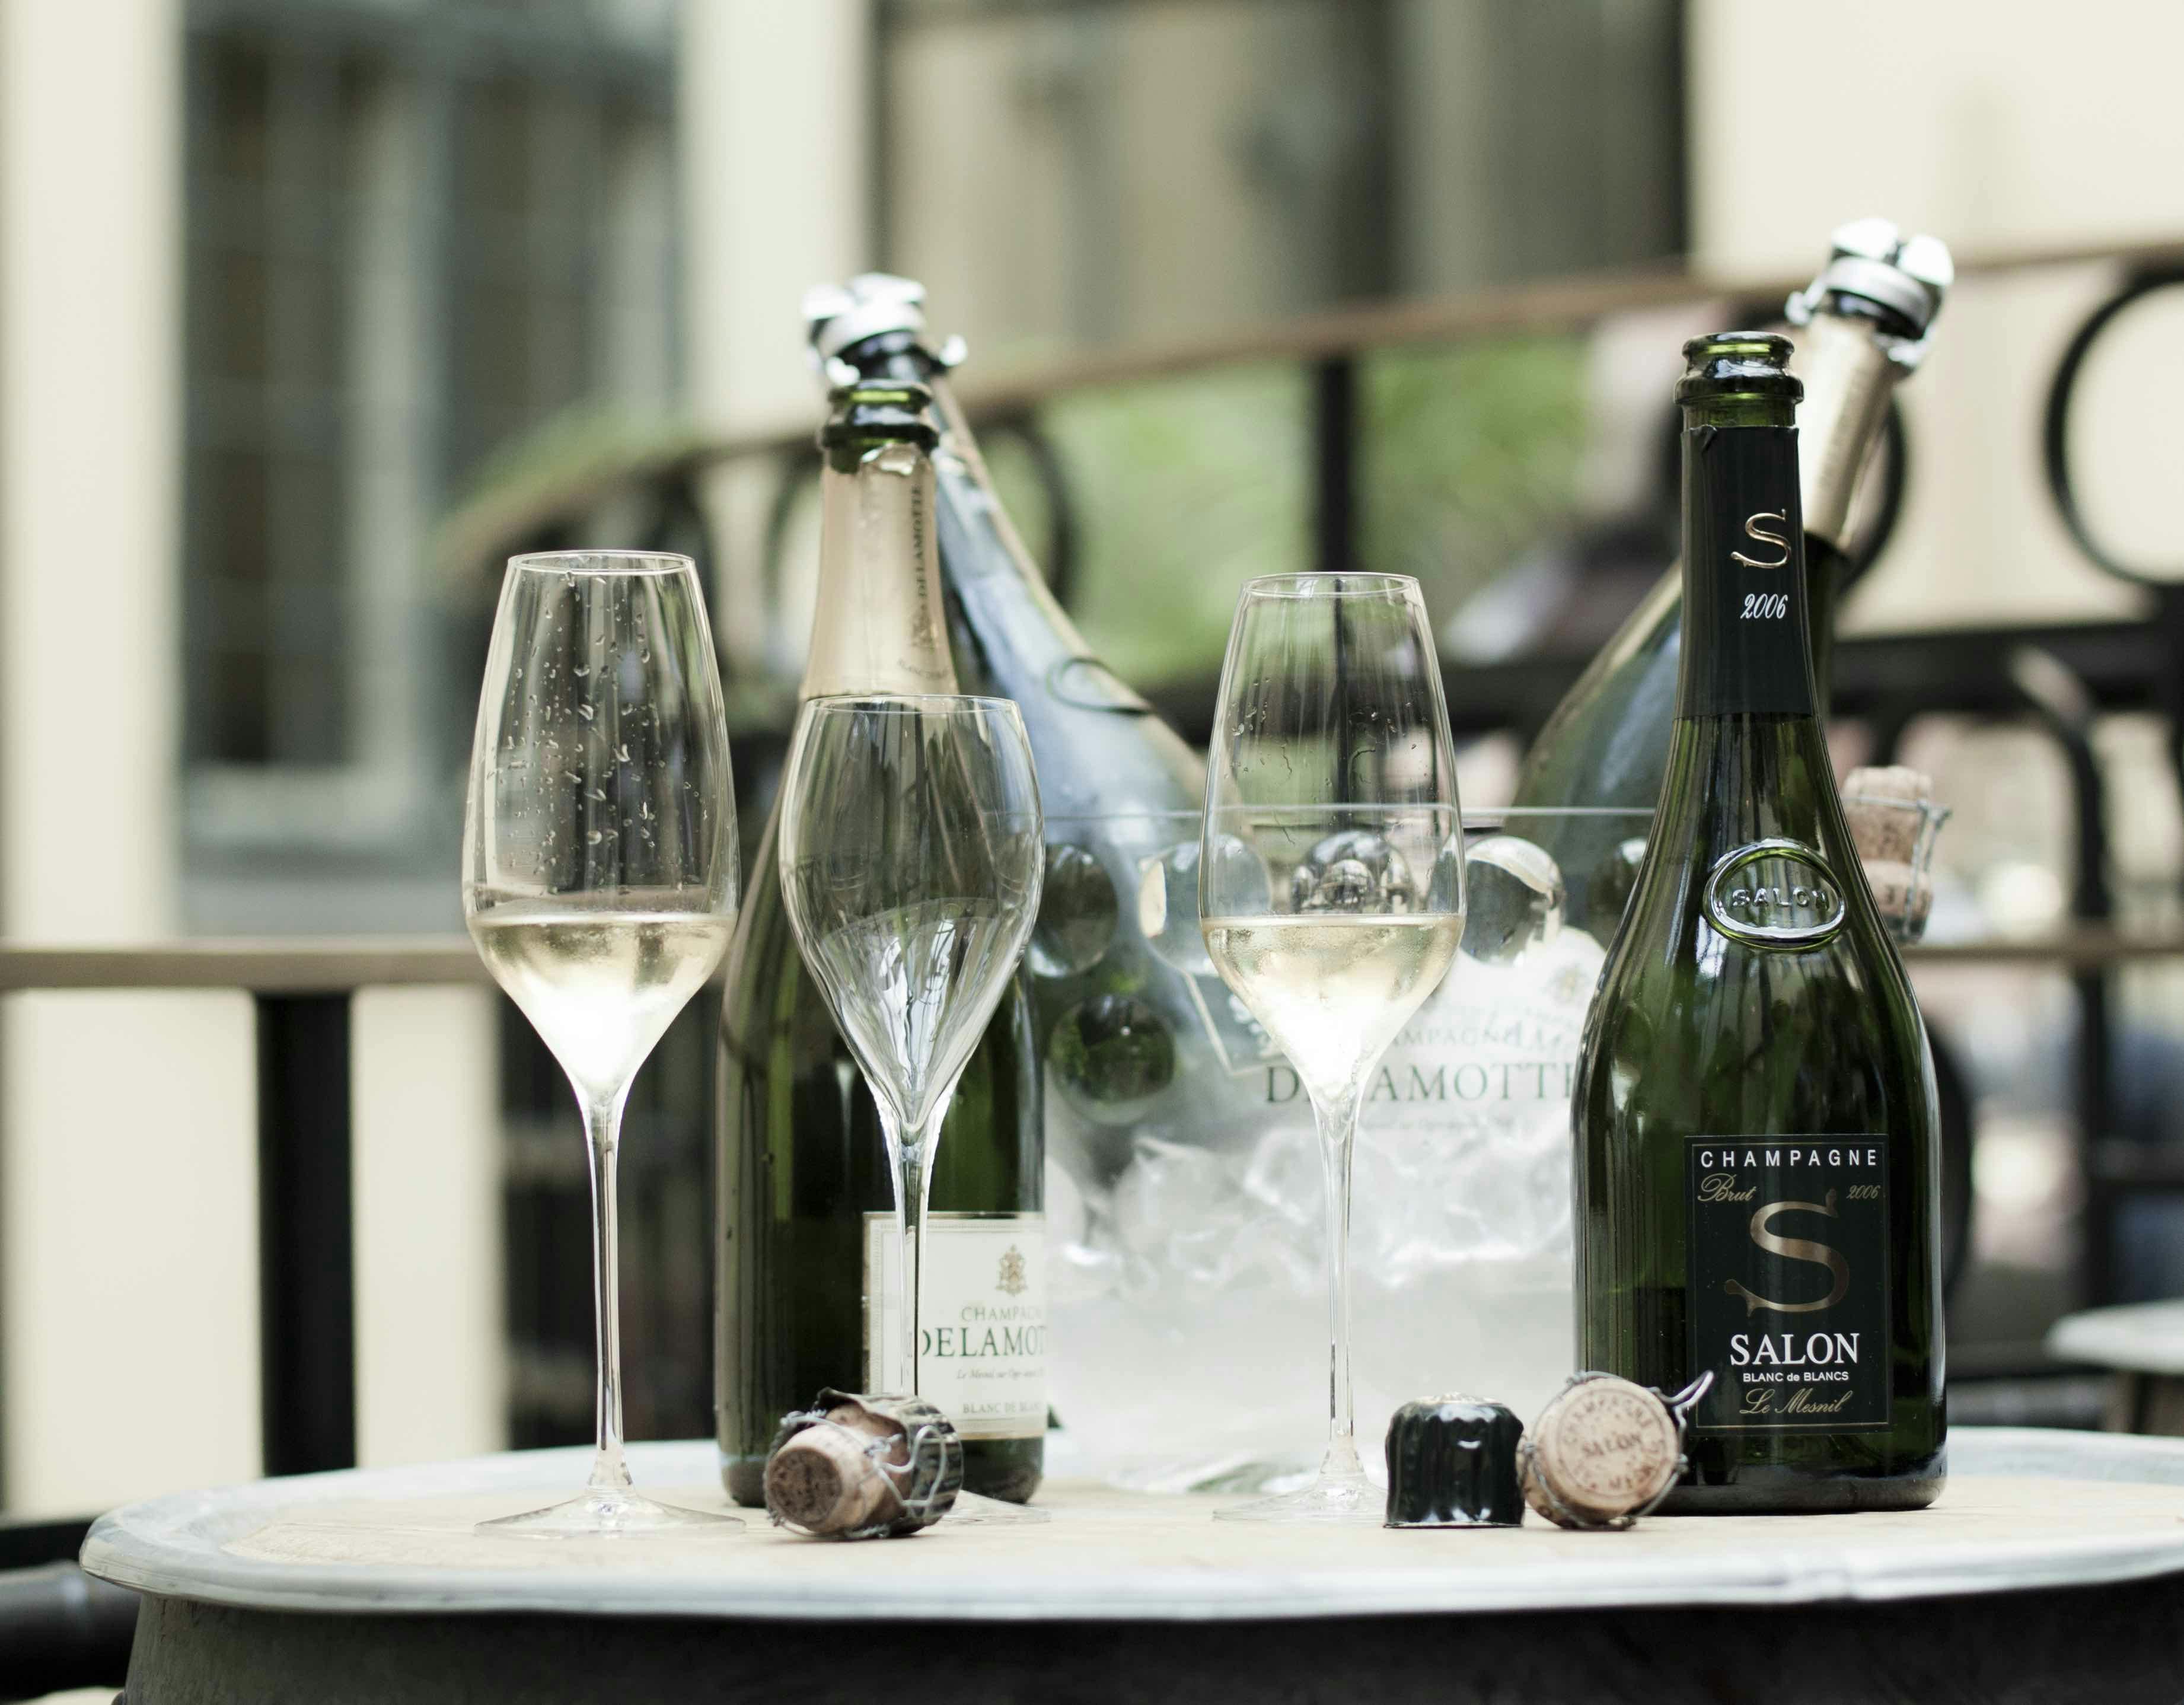 Champagne salon vintage 2006 - Elegant med lång livslängd